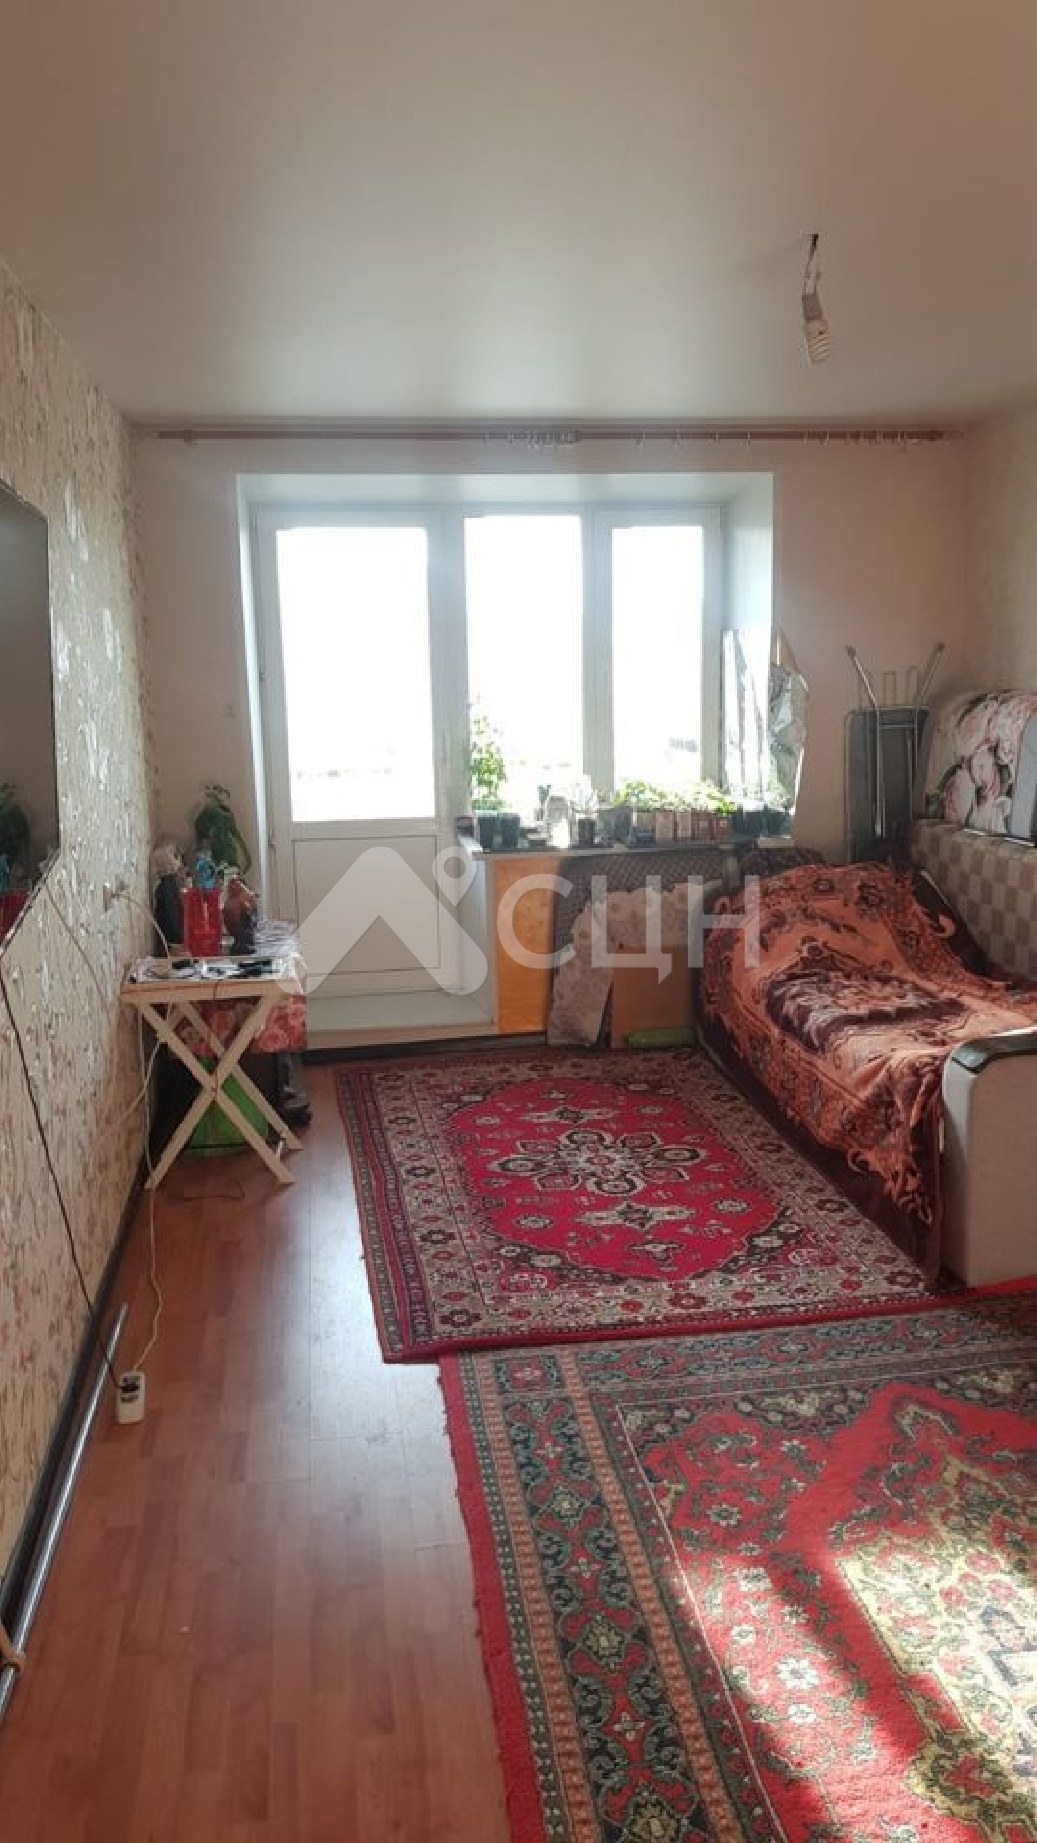 авито саров недвижимость
: Г. Саров, улица Курчатова, 19, 2-комн квартира, этаж 5 из 5, продажа.